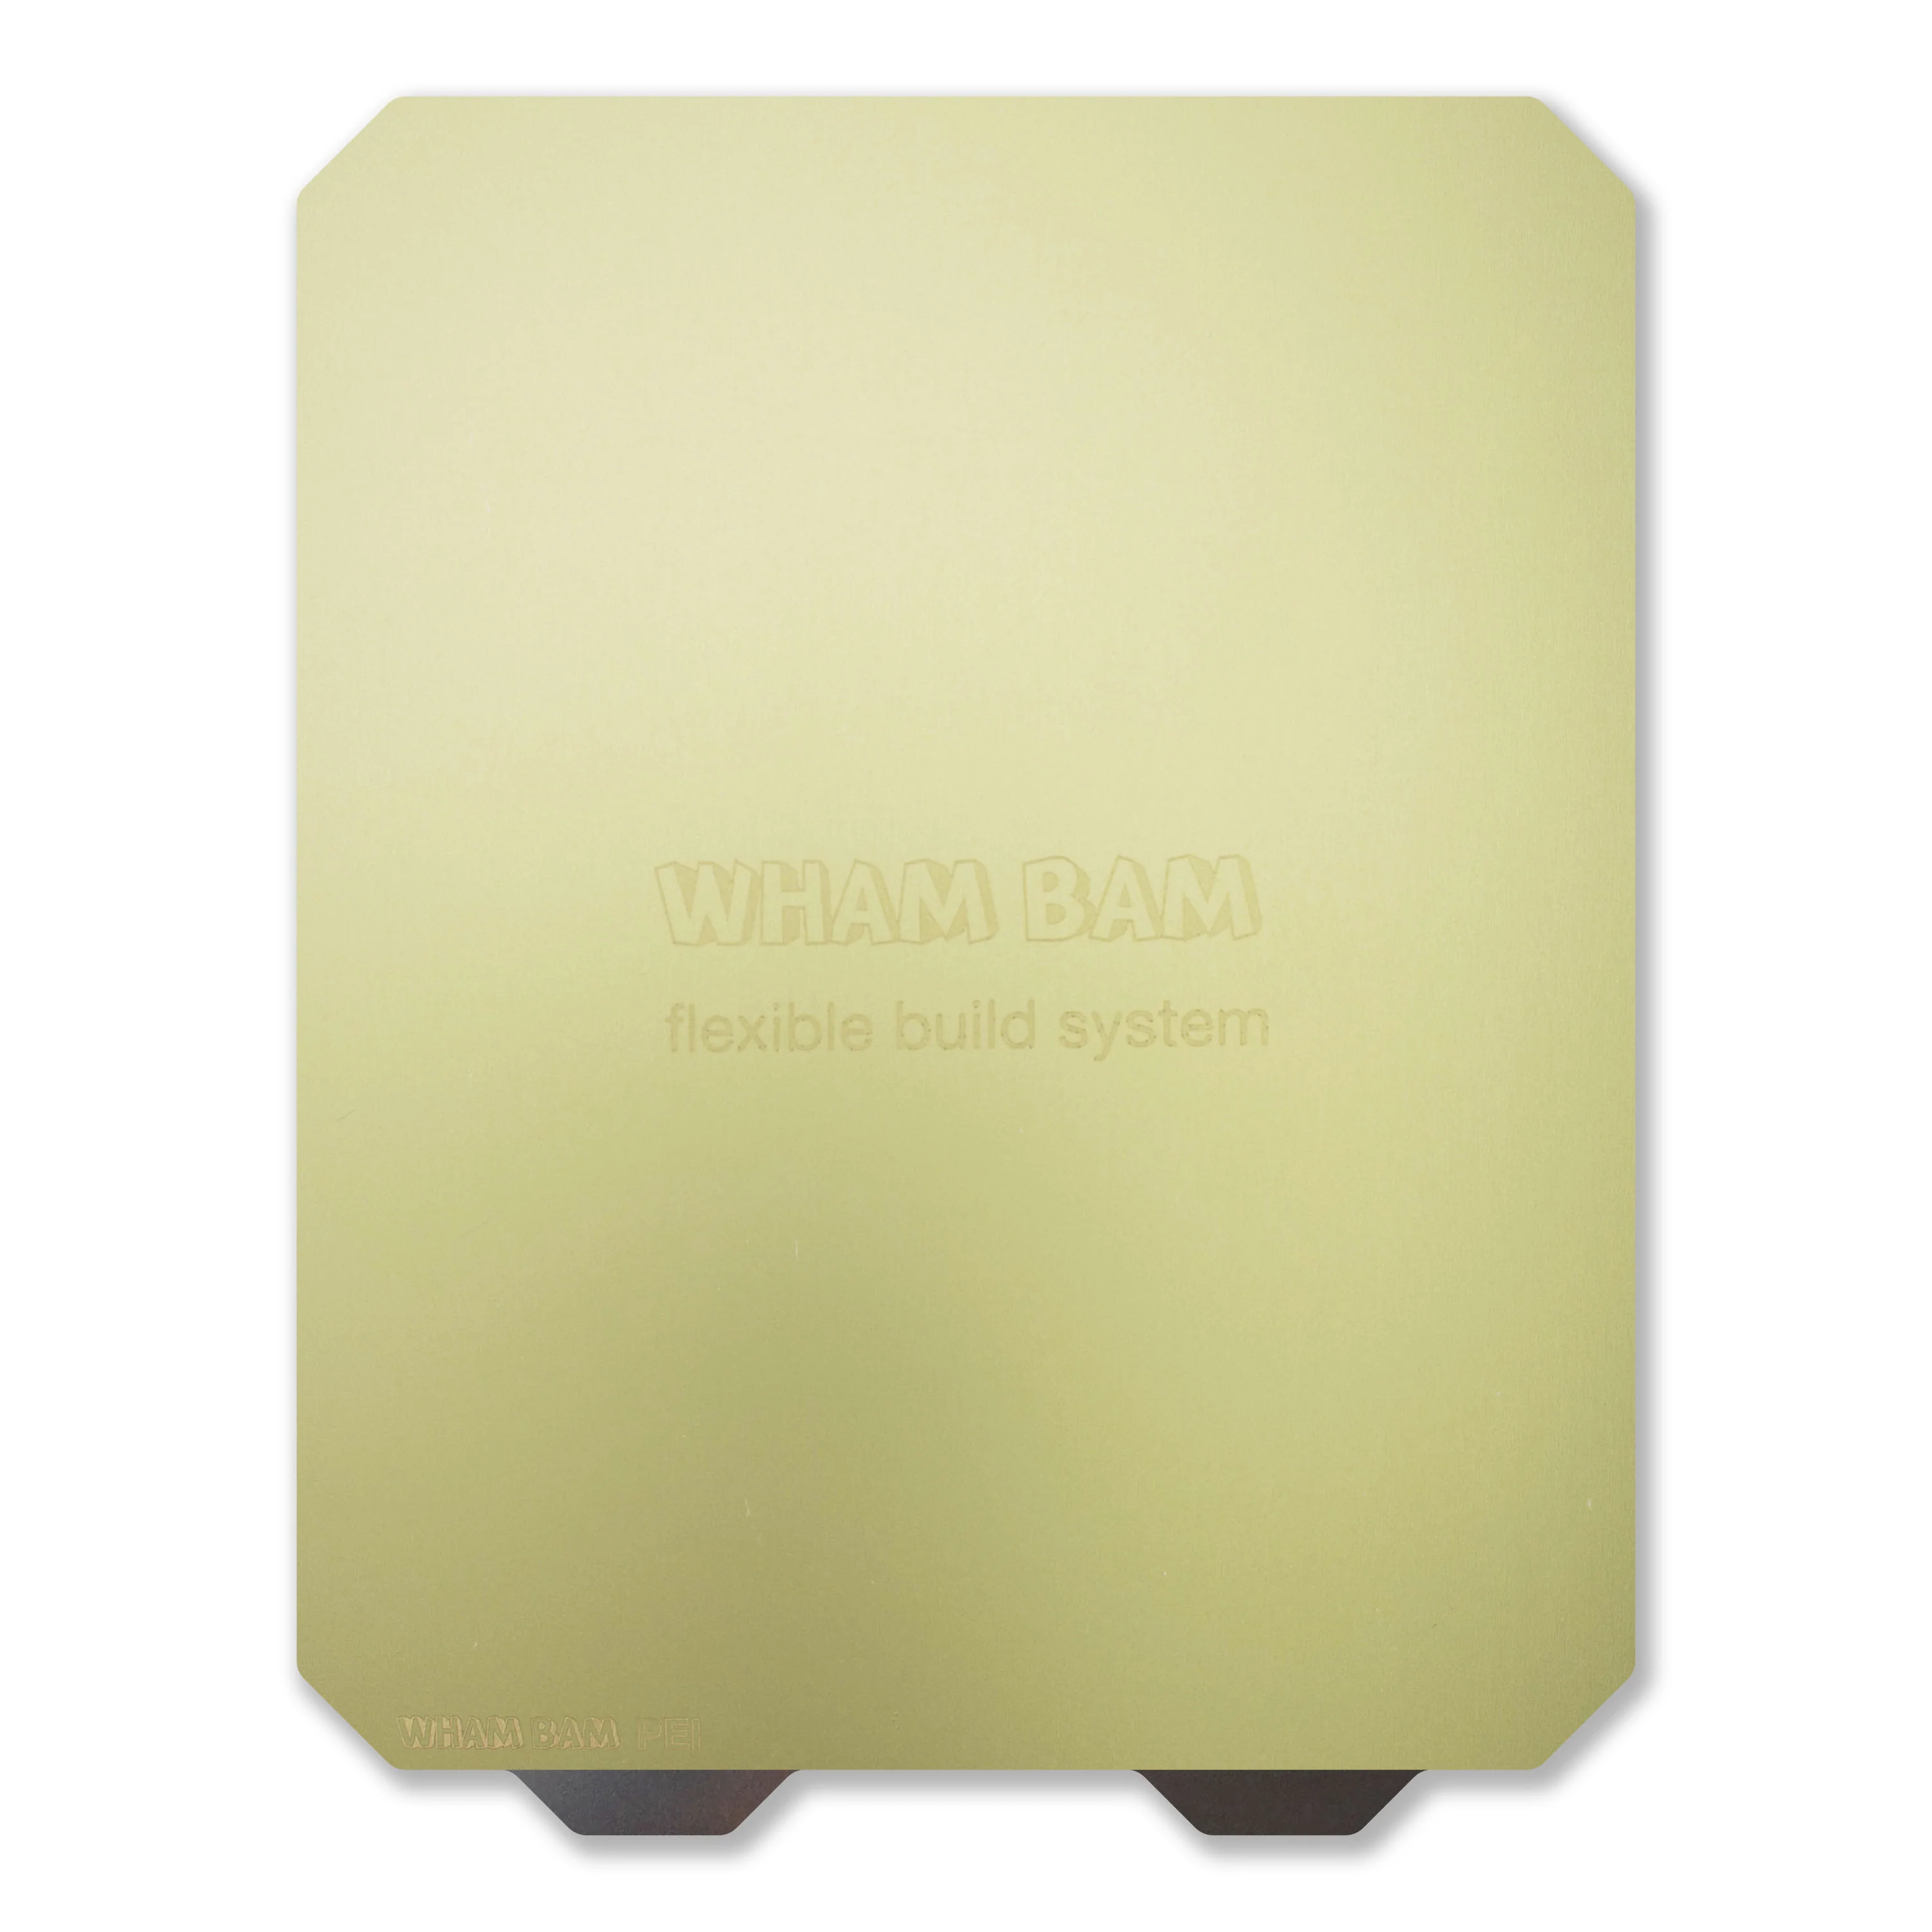 310 x 310 - Wham bam (pre-order)